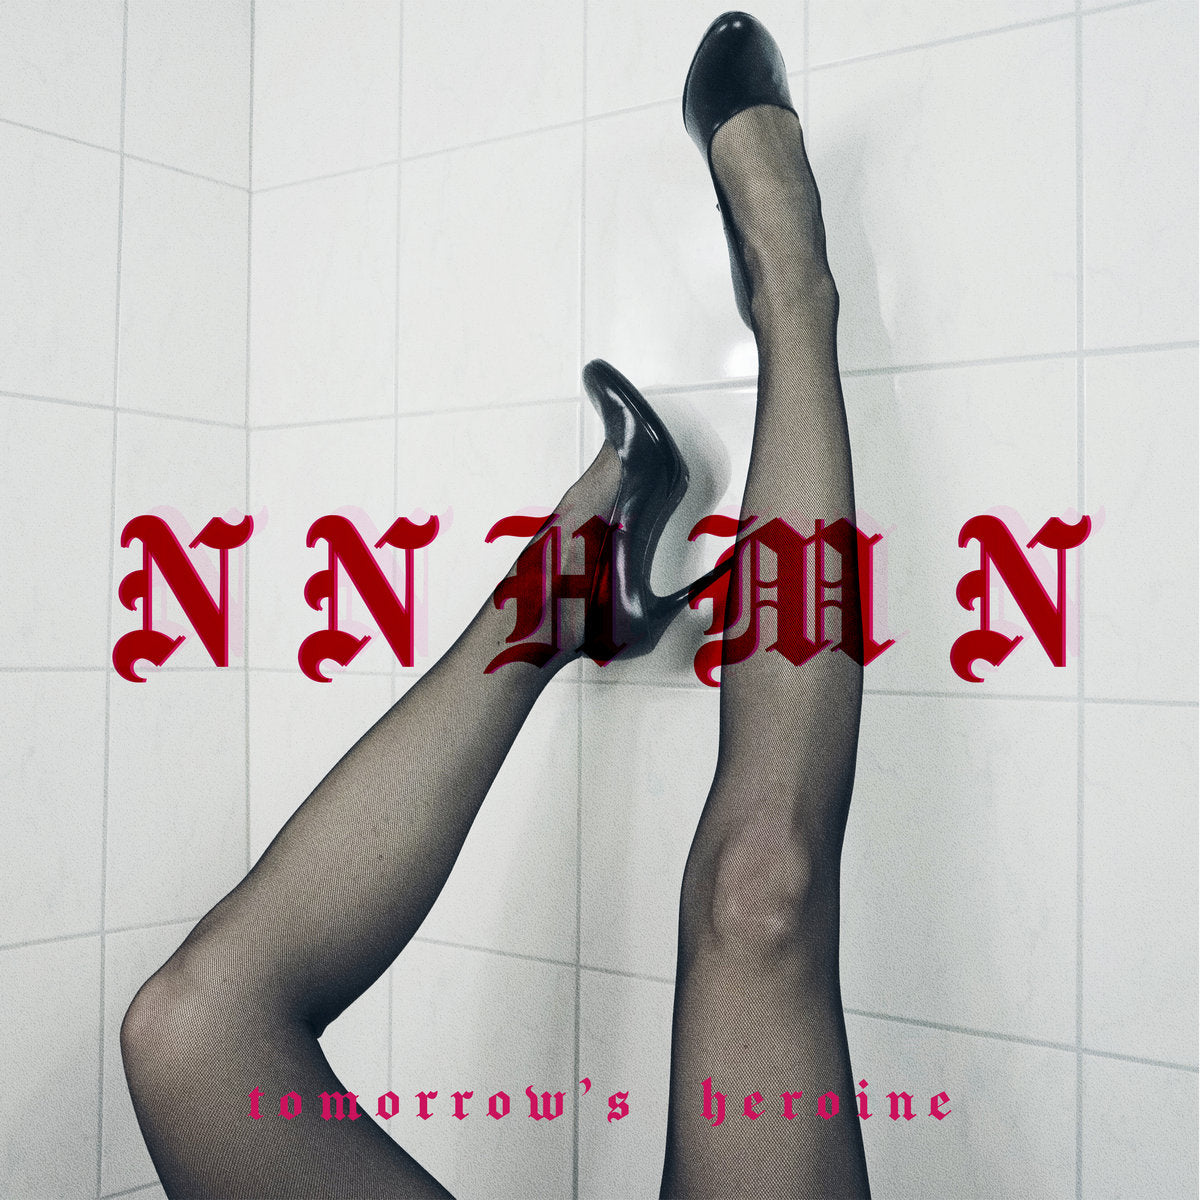 NNHMN "Tomorrow's Heroine"